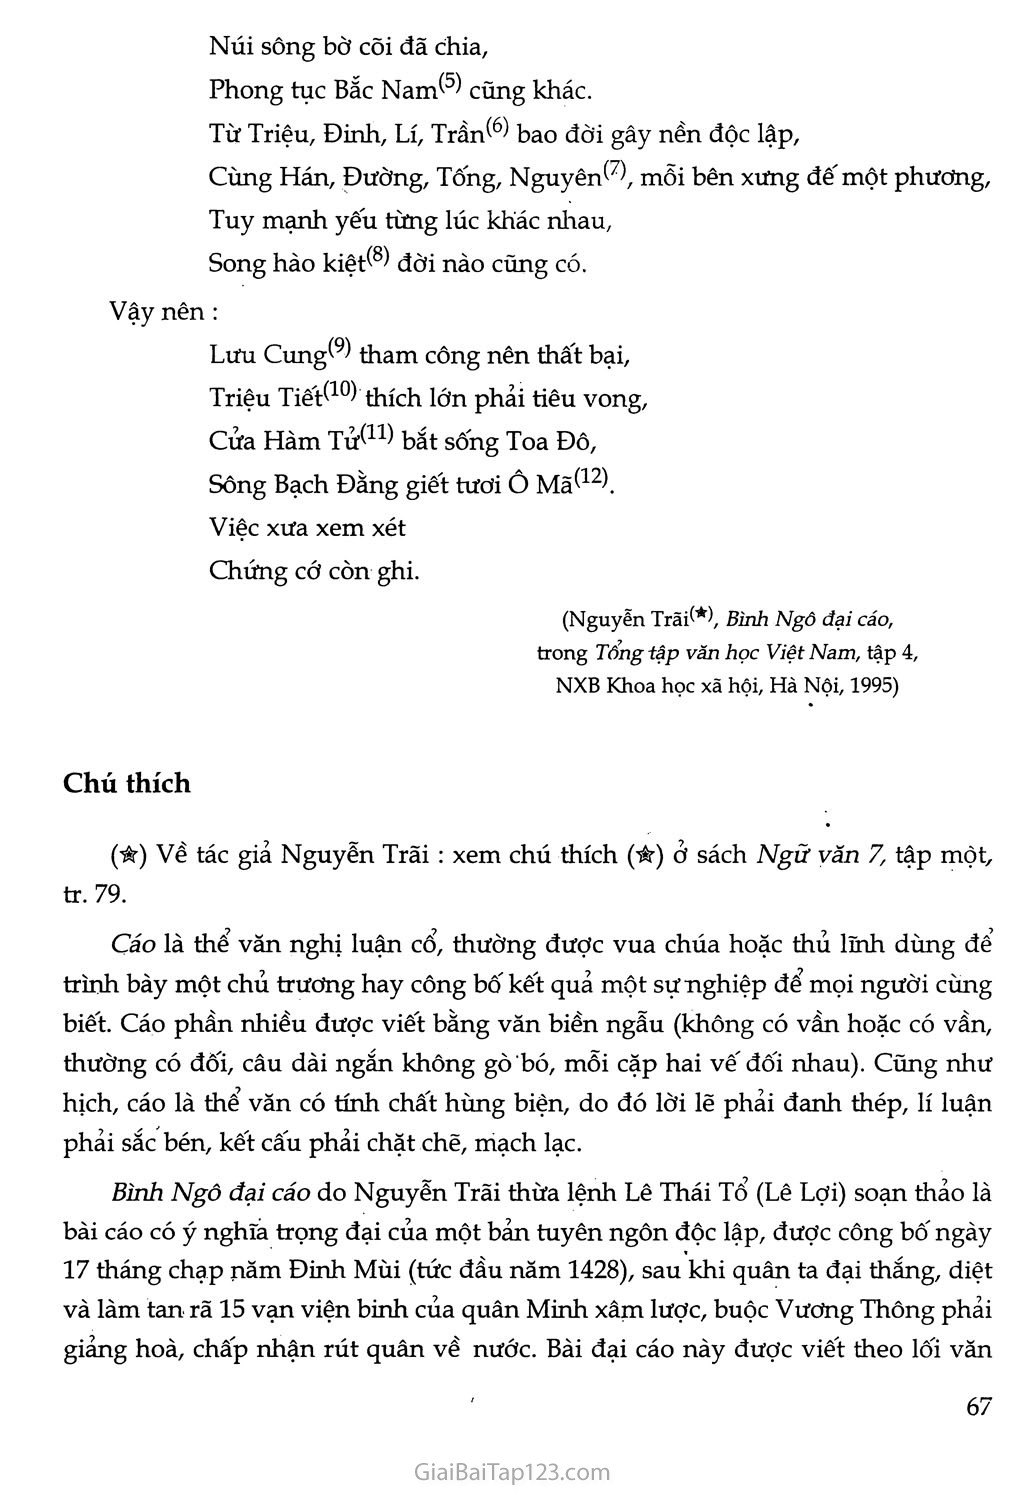 Nước Đại Việt ta (trích Bình Ngô đại cáo) trang 3